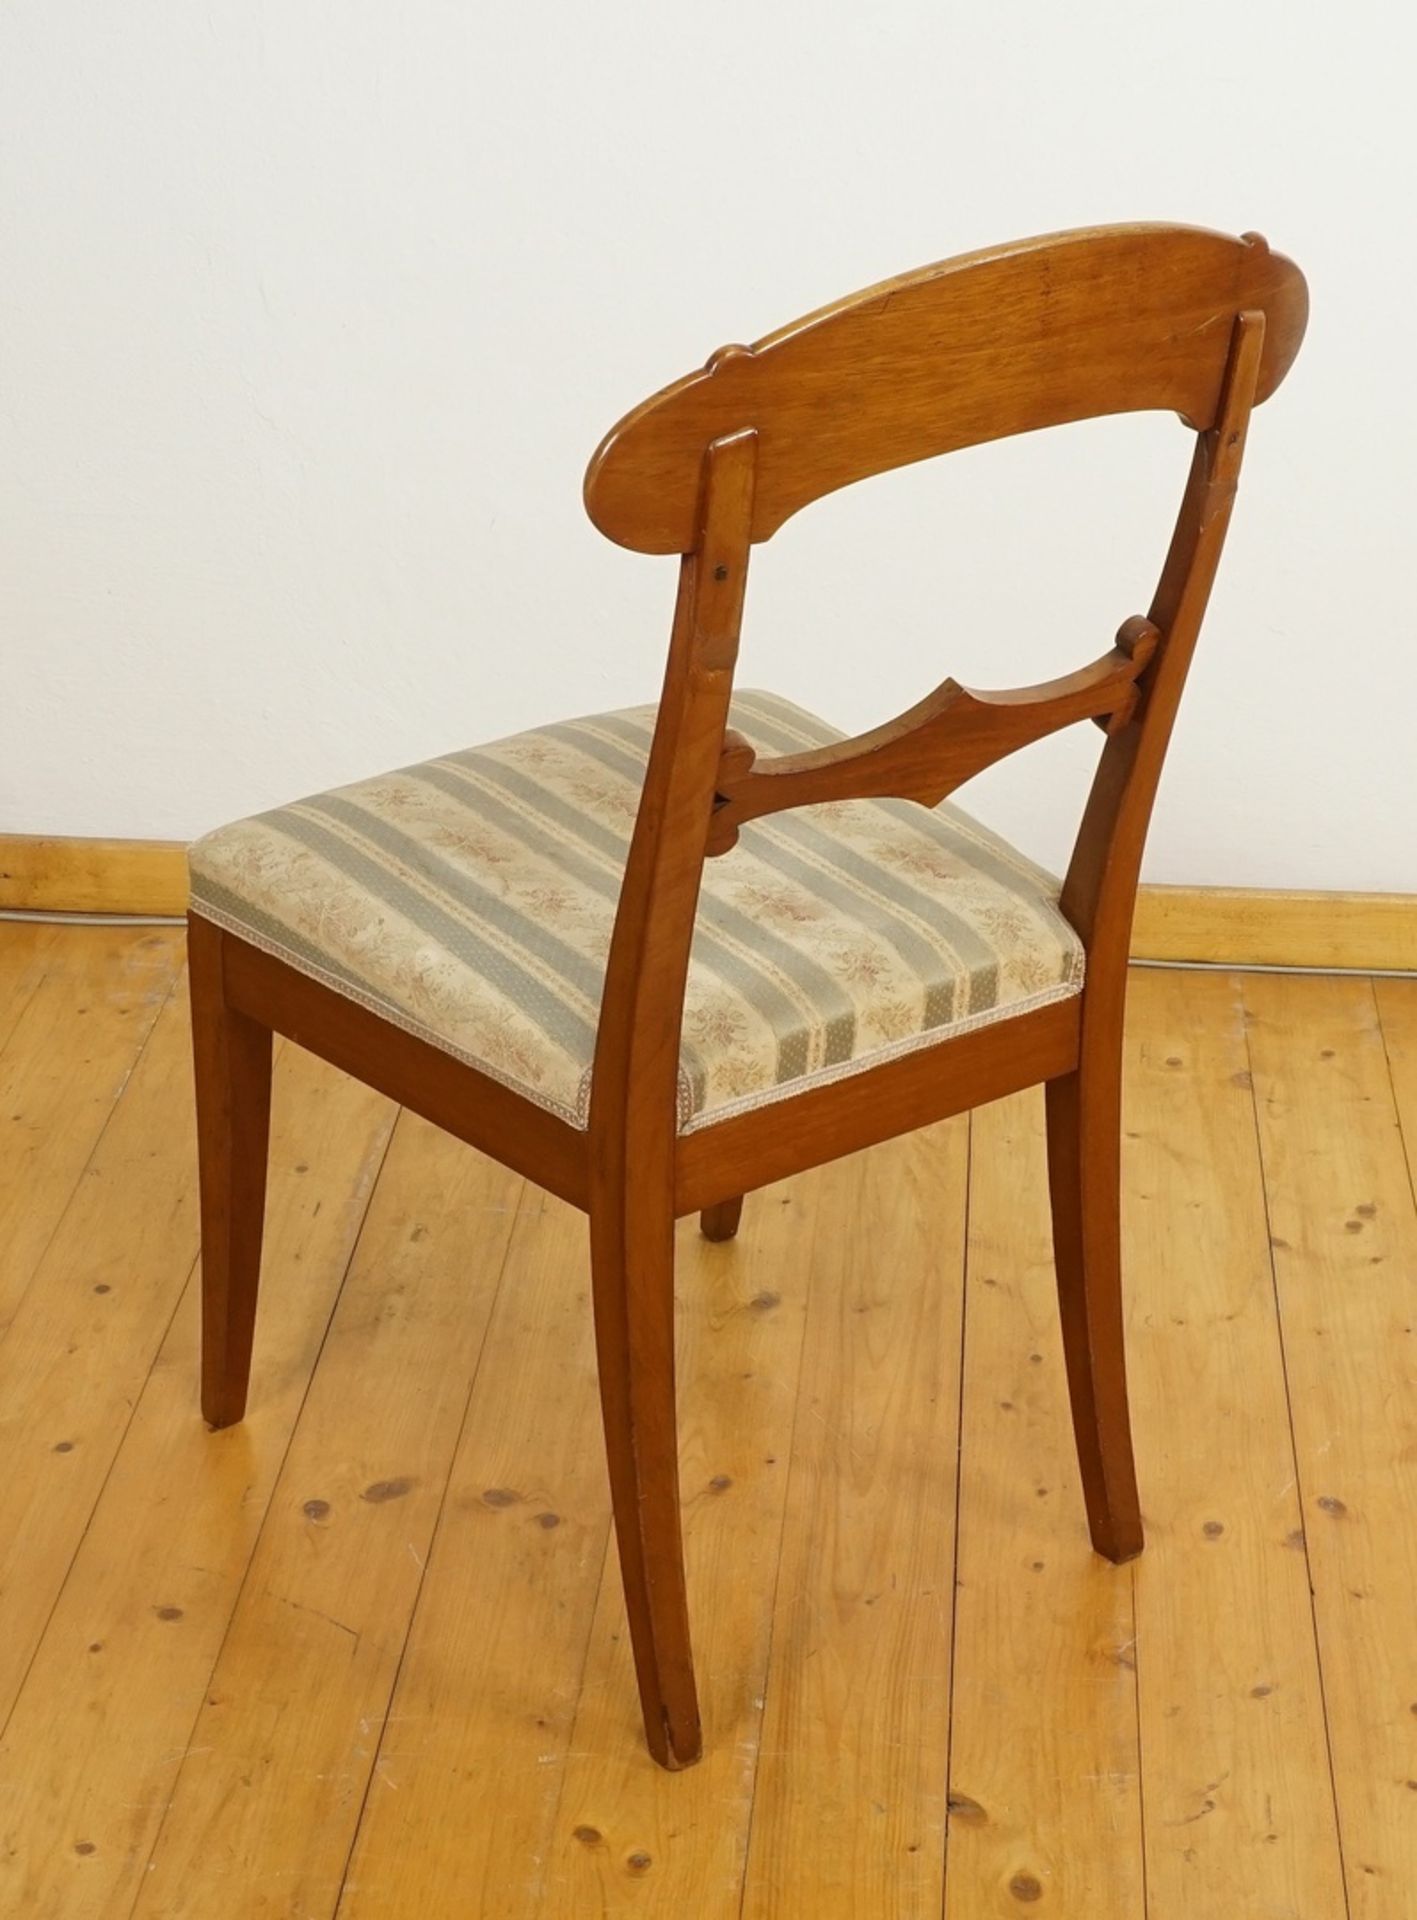 Zwei Stühle im Biedermeierstil, Nussbaum - Bild 3 aus 5